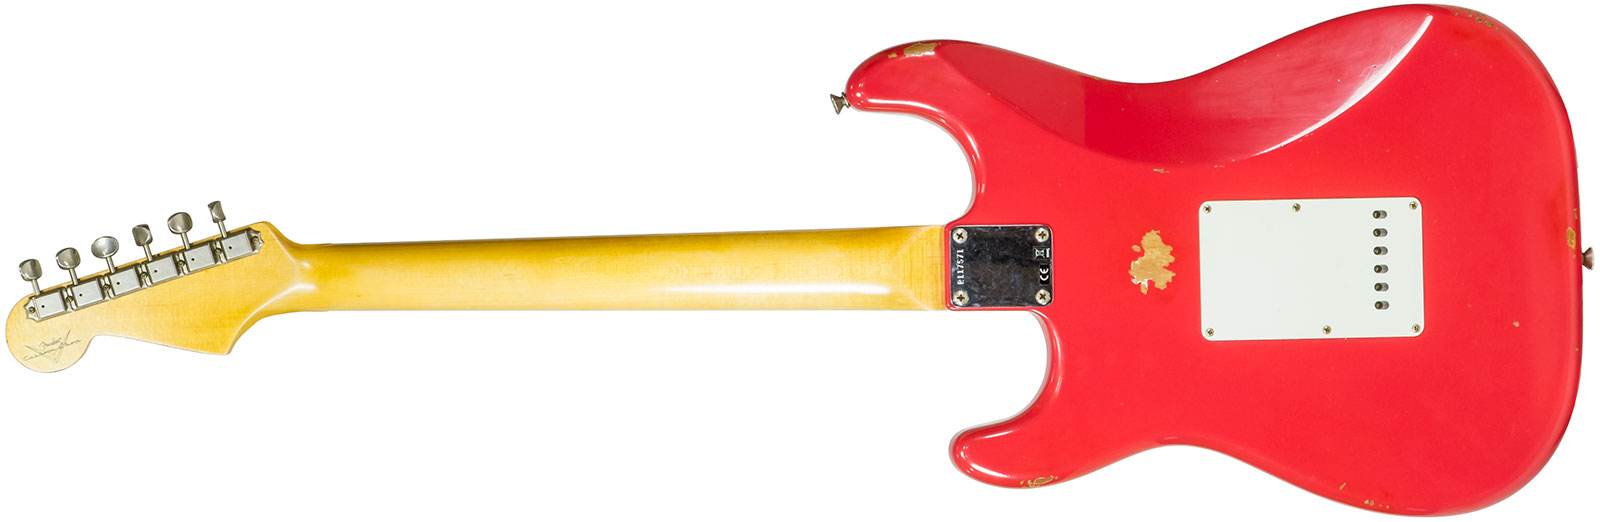 Fender Custom Shop Strat 1963 3s Trem Rw #r117571 - Relic Fiesta Red - Elektrische gitaar in Str-vorm - Variation 1